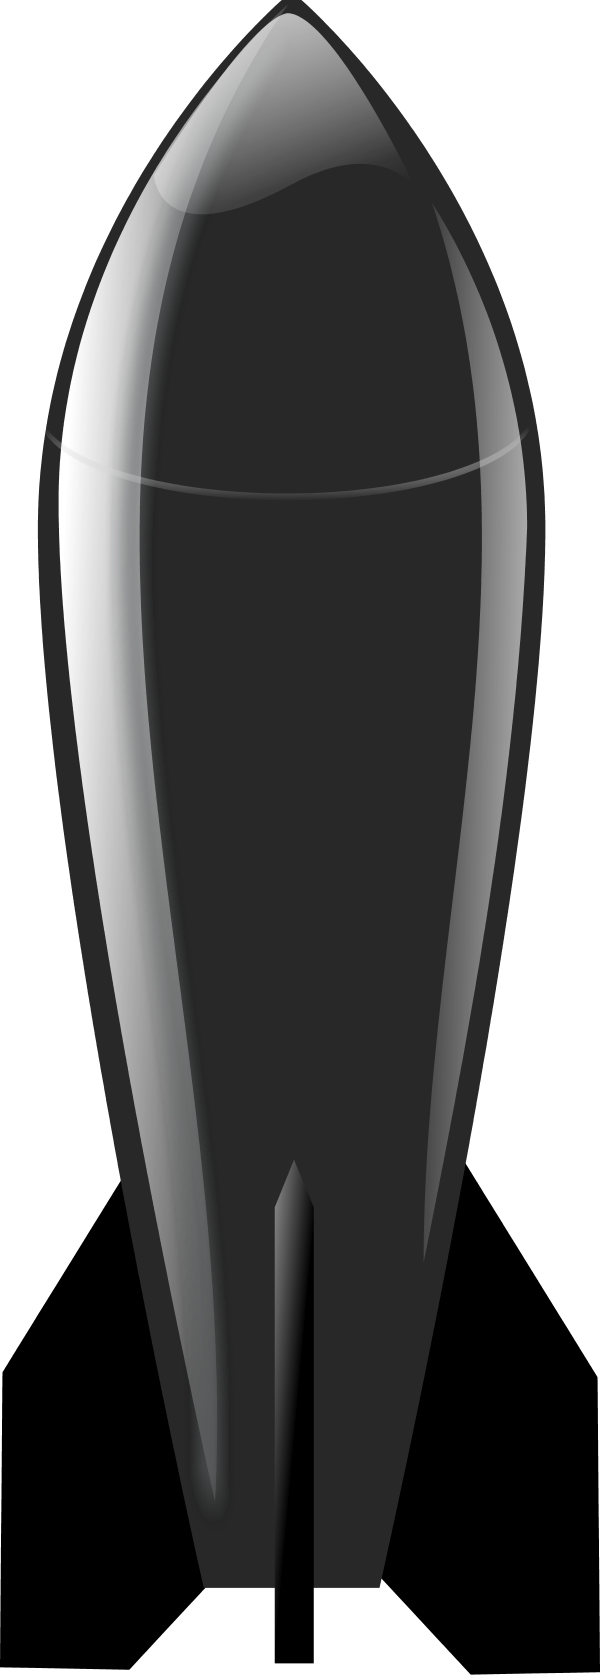 Air Air Missile Clipart